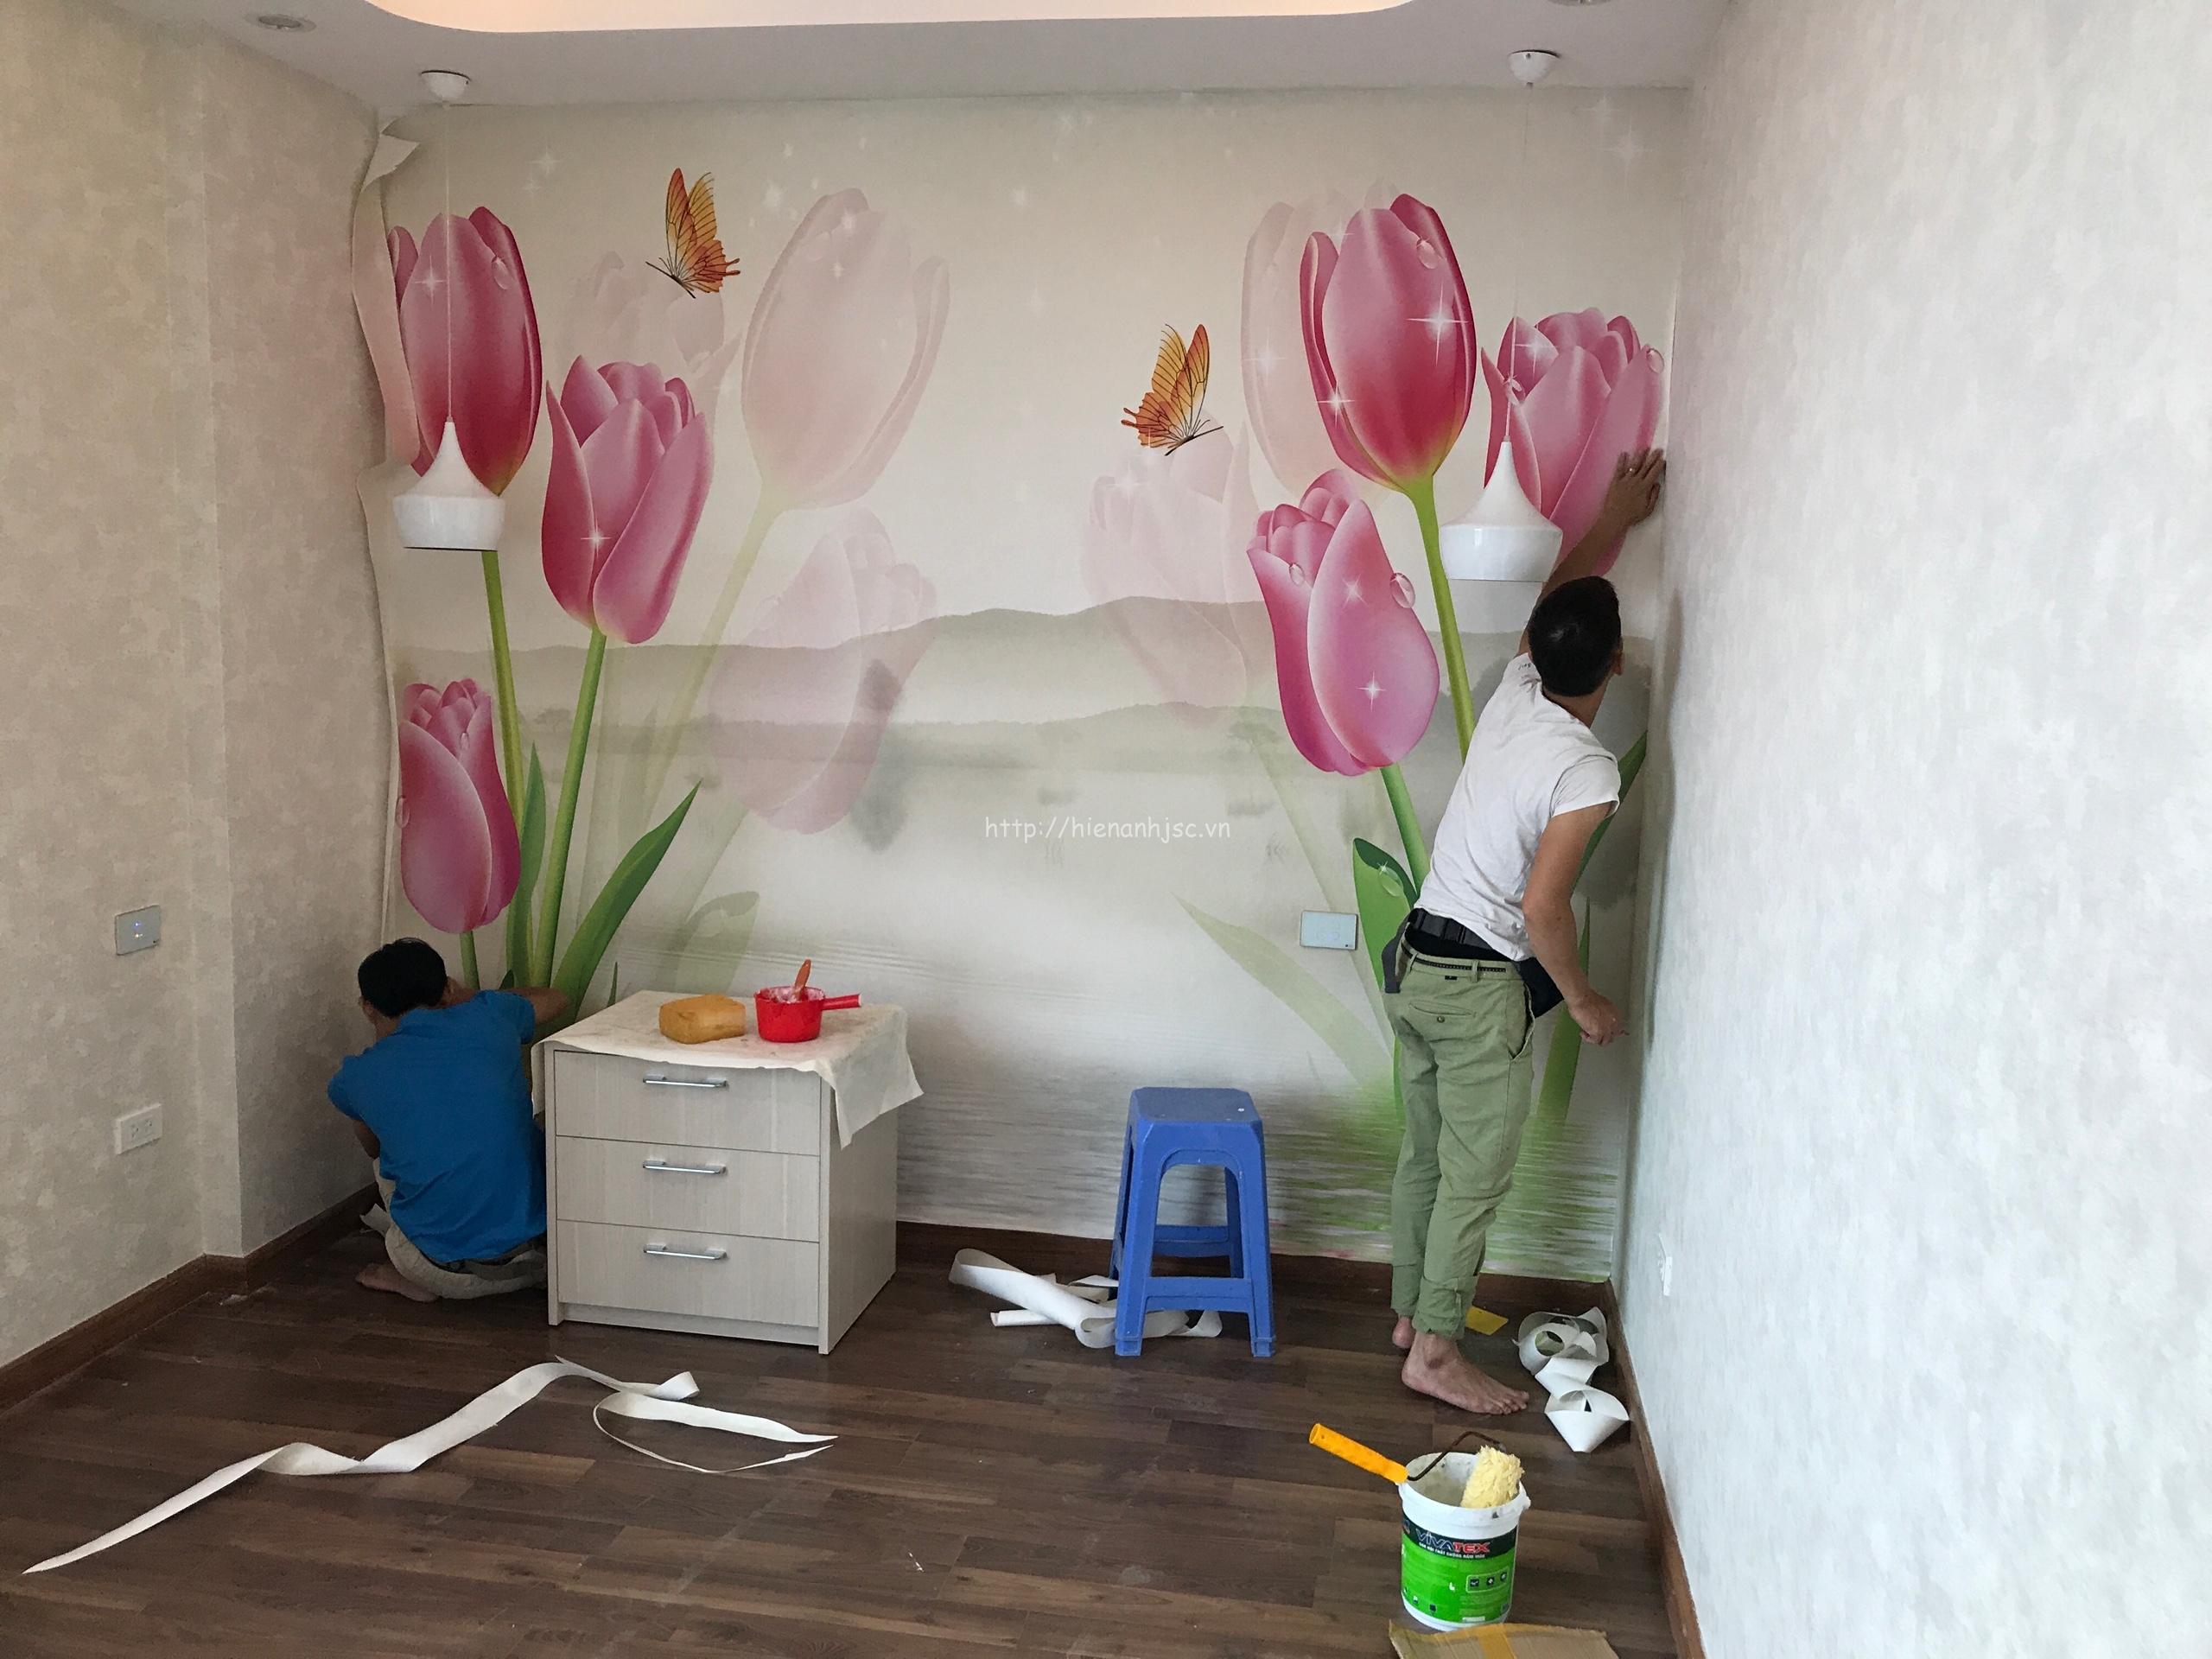 Thi công giấy và tranh dán tường tại Hà Nội